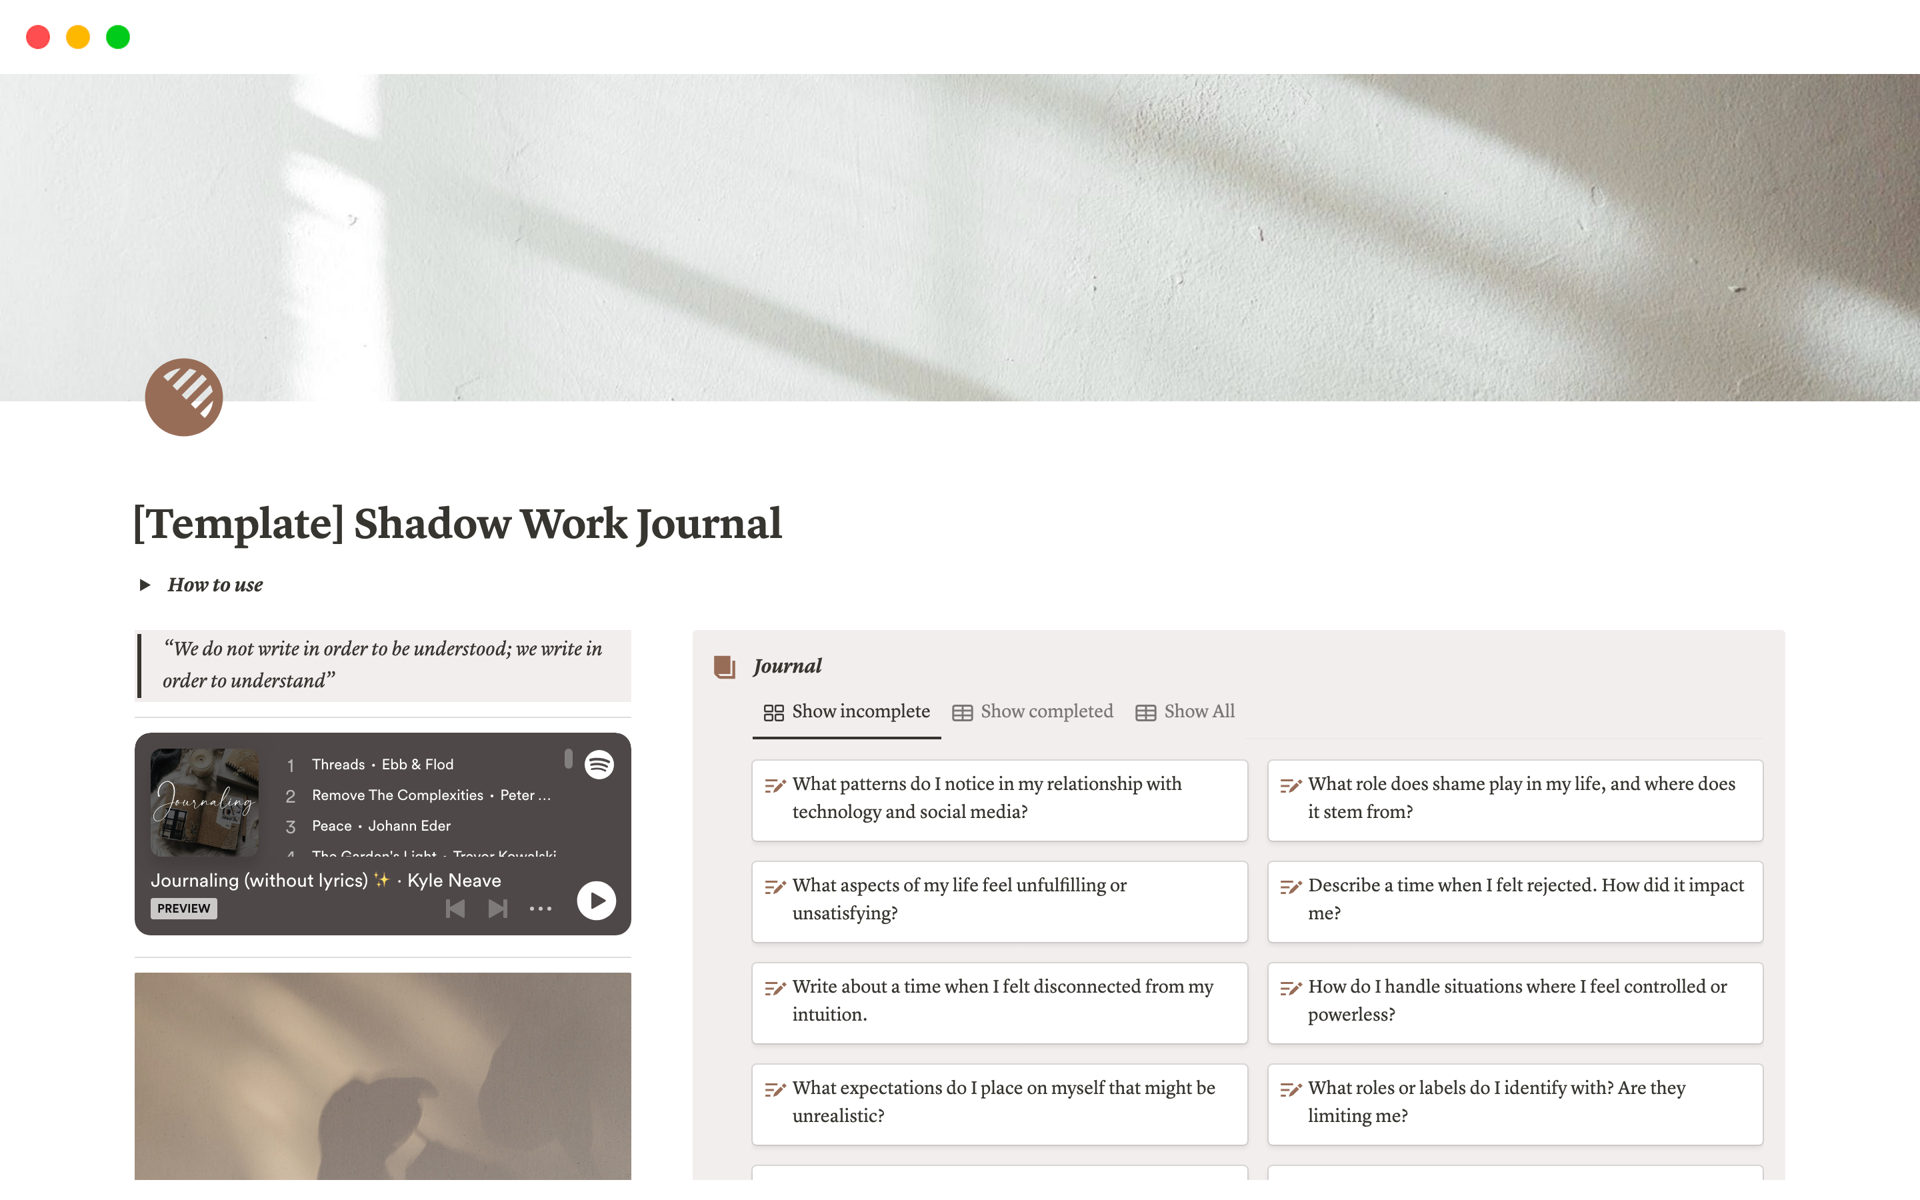 Uma prévia do modelo para Shadow Work Journal | Self Reflection Prompts